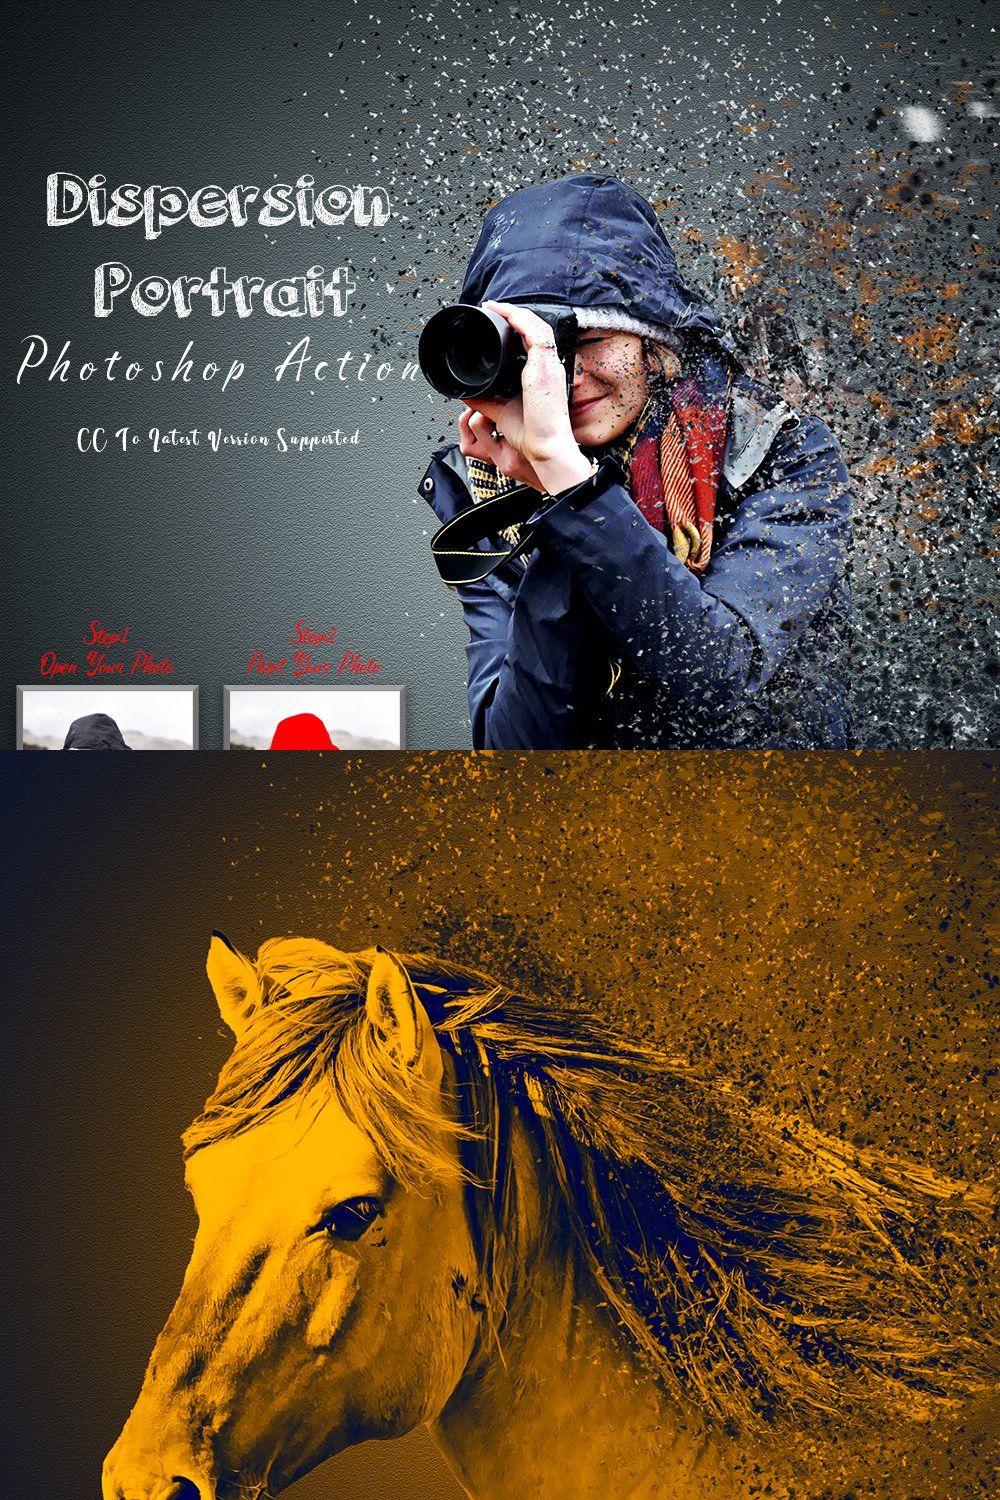 Dispersion Portrait Photoshop Action pinterest preview image.